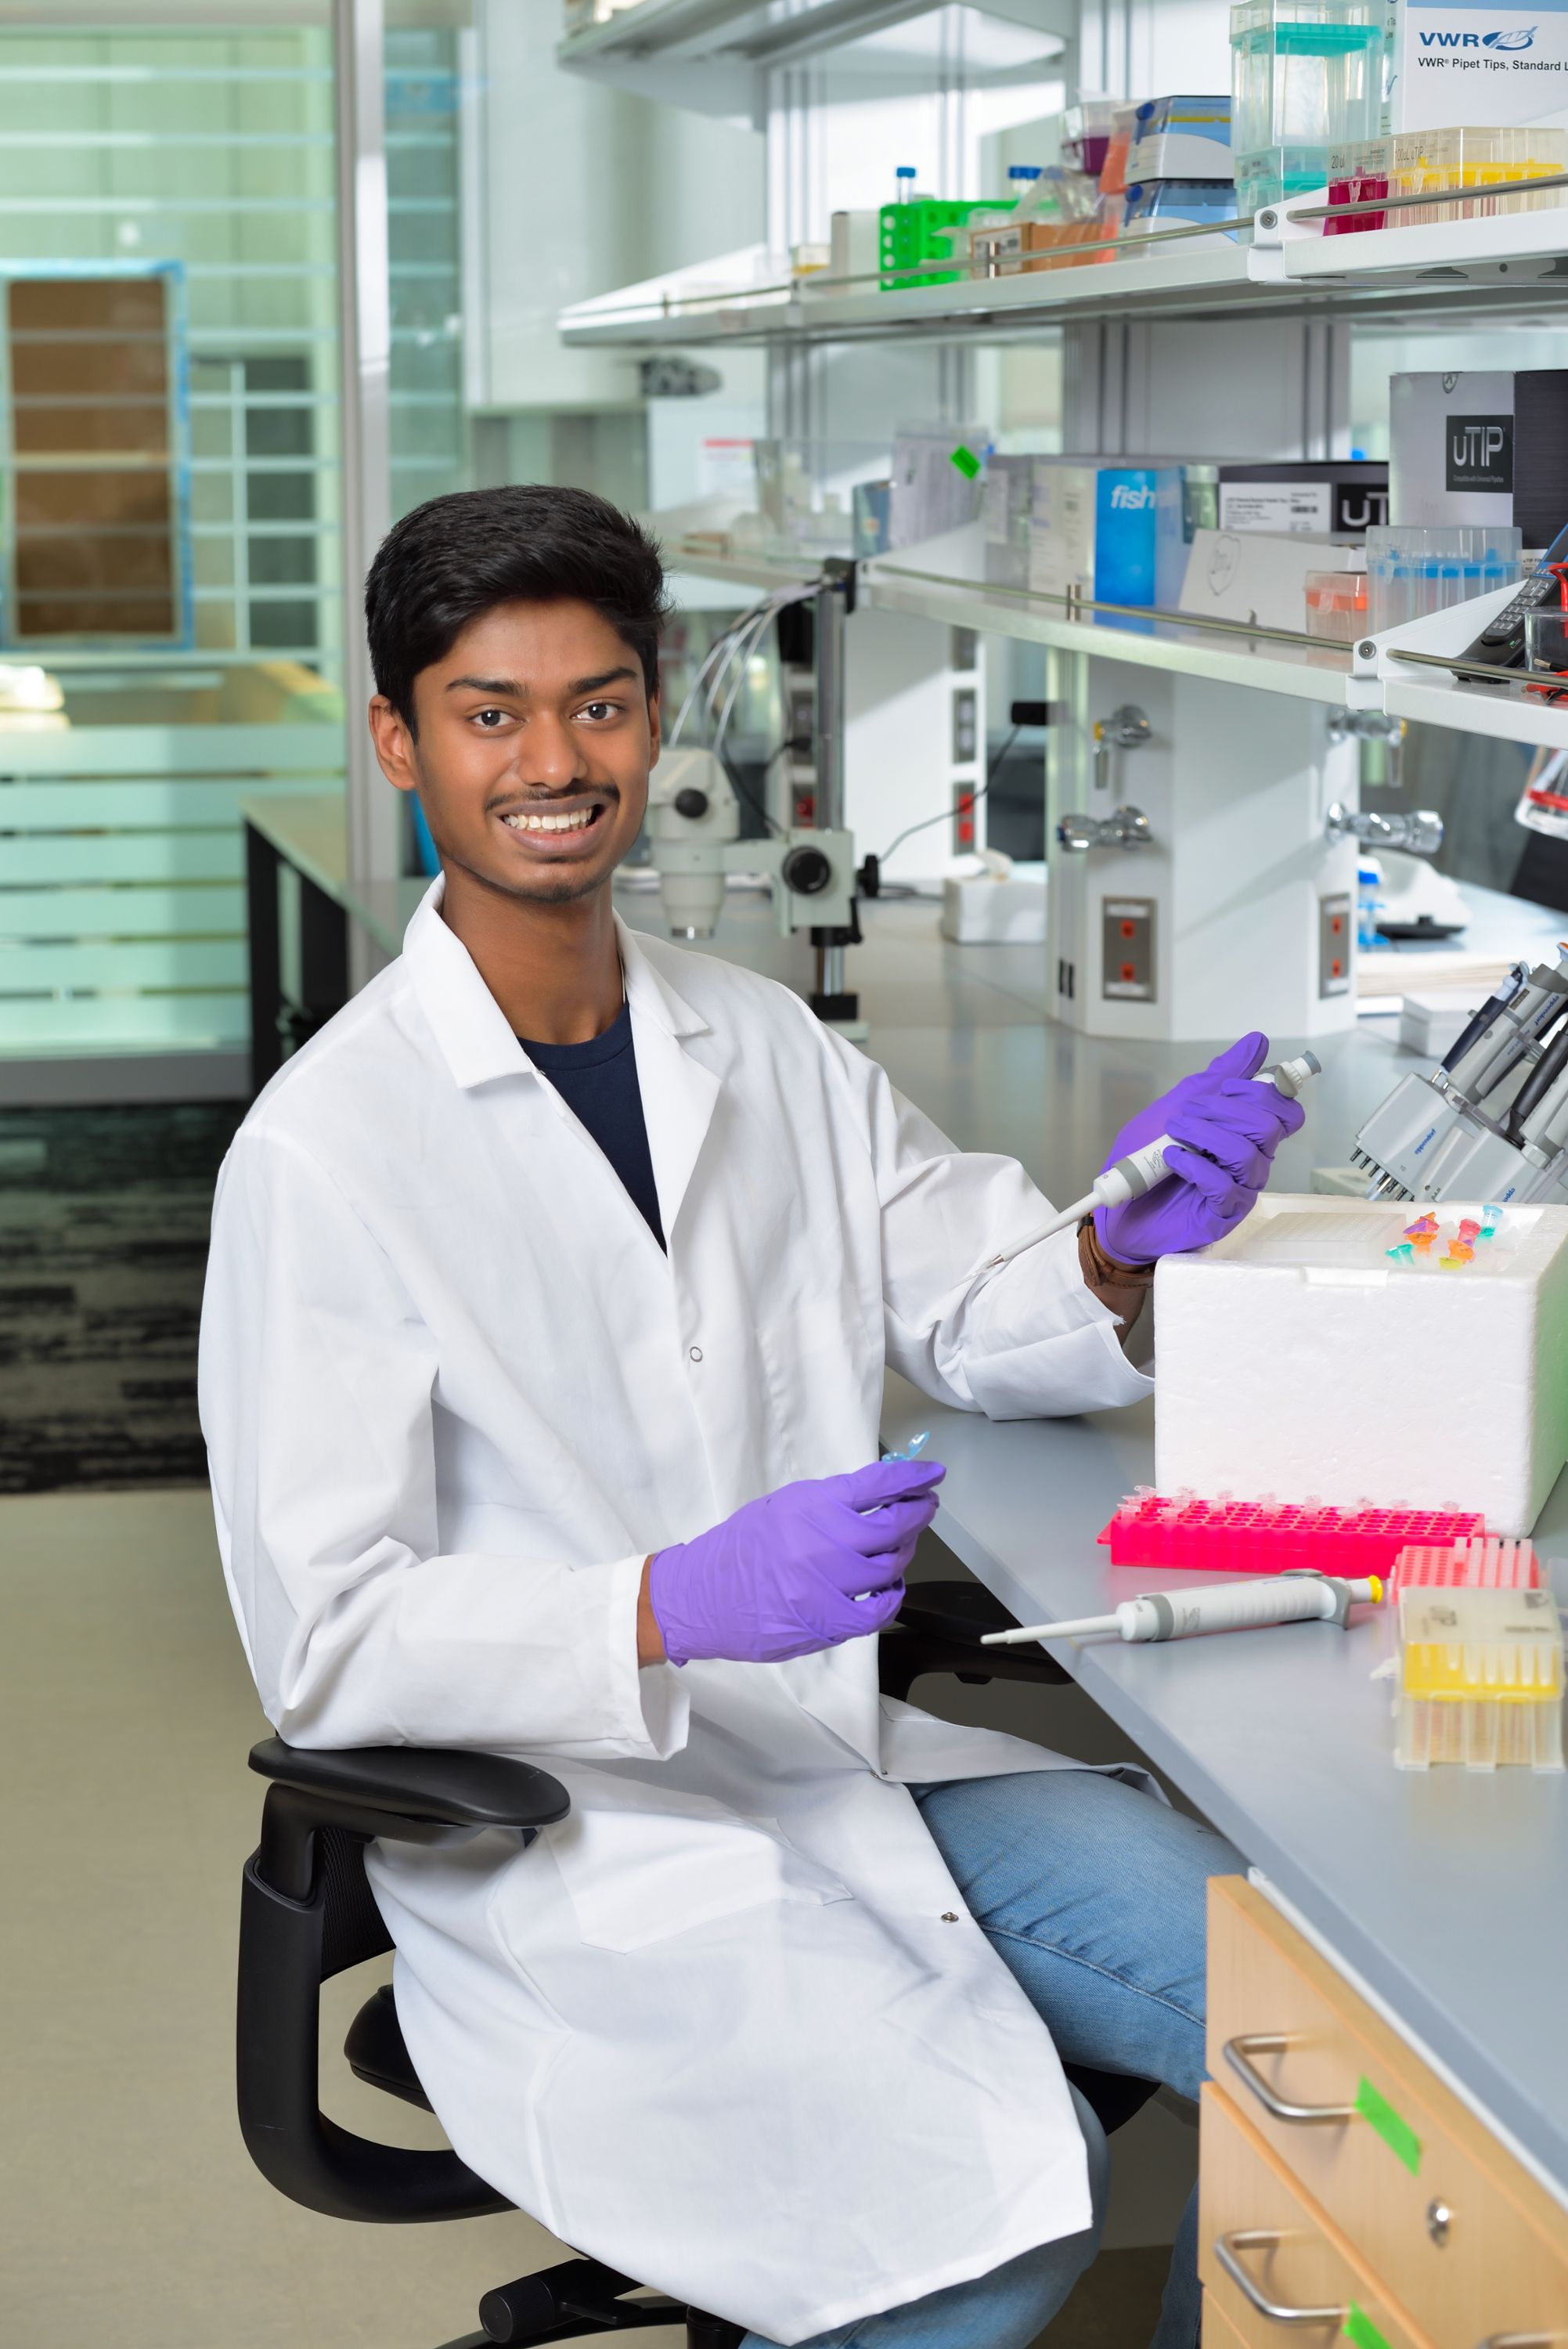 Hari Ramakrishnan is pictured in a lab